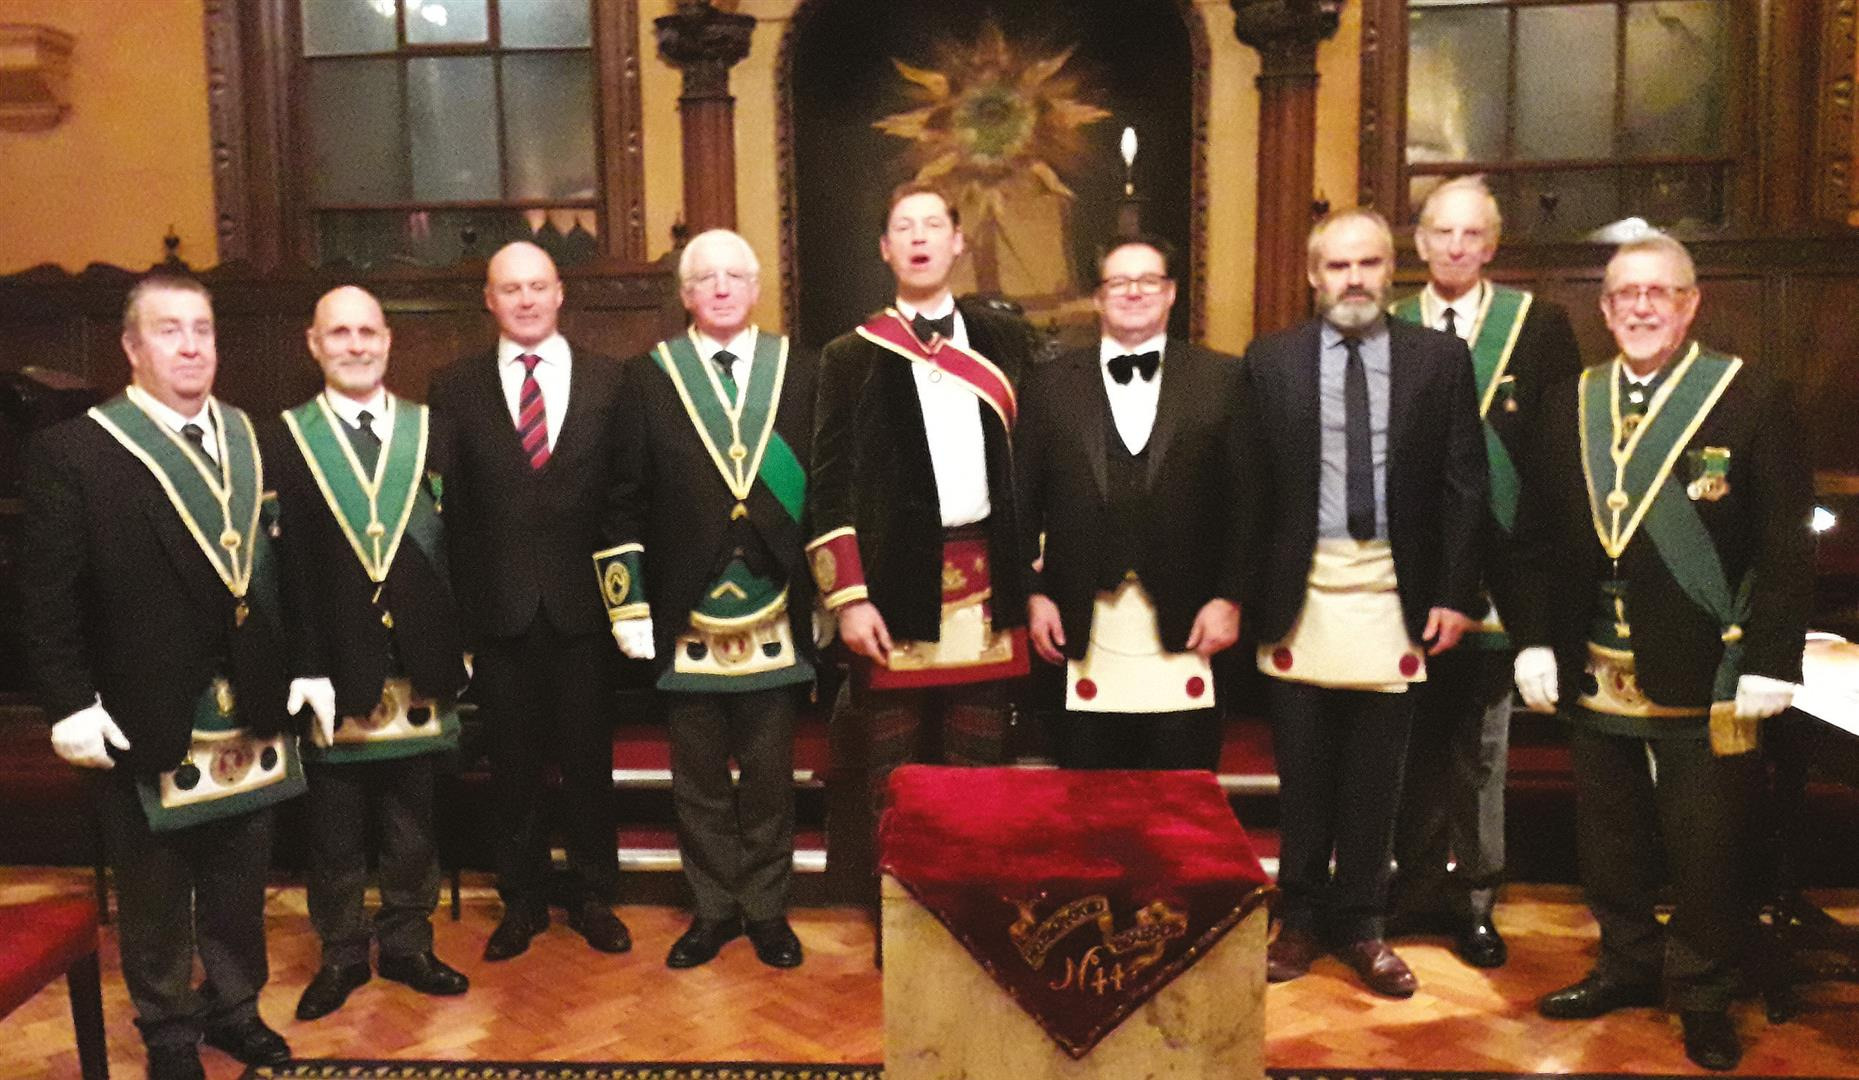 Grand Master Mason - The Grand Lodge of Scotland